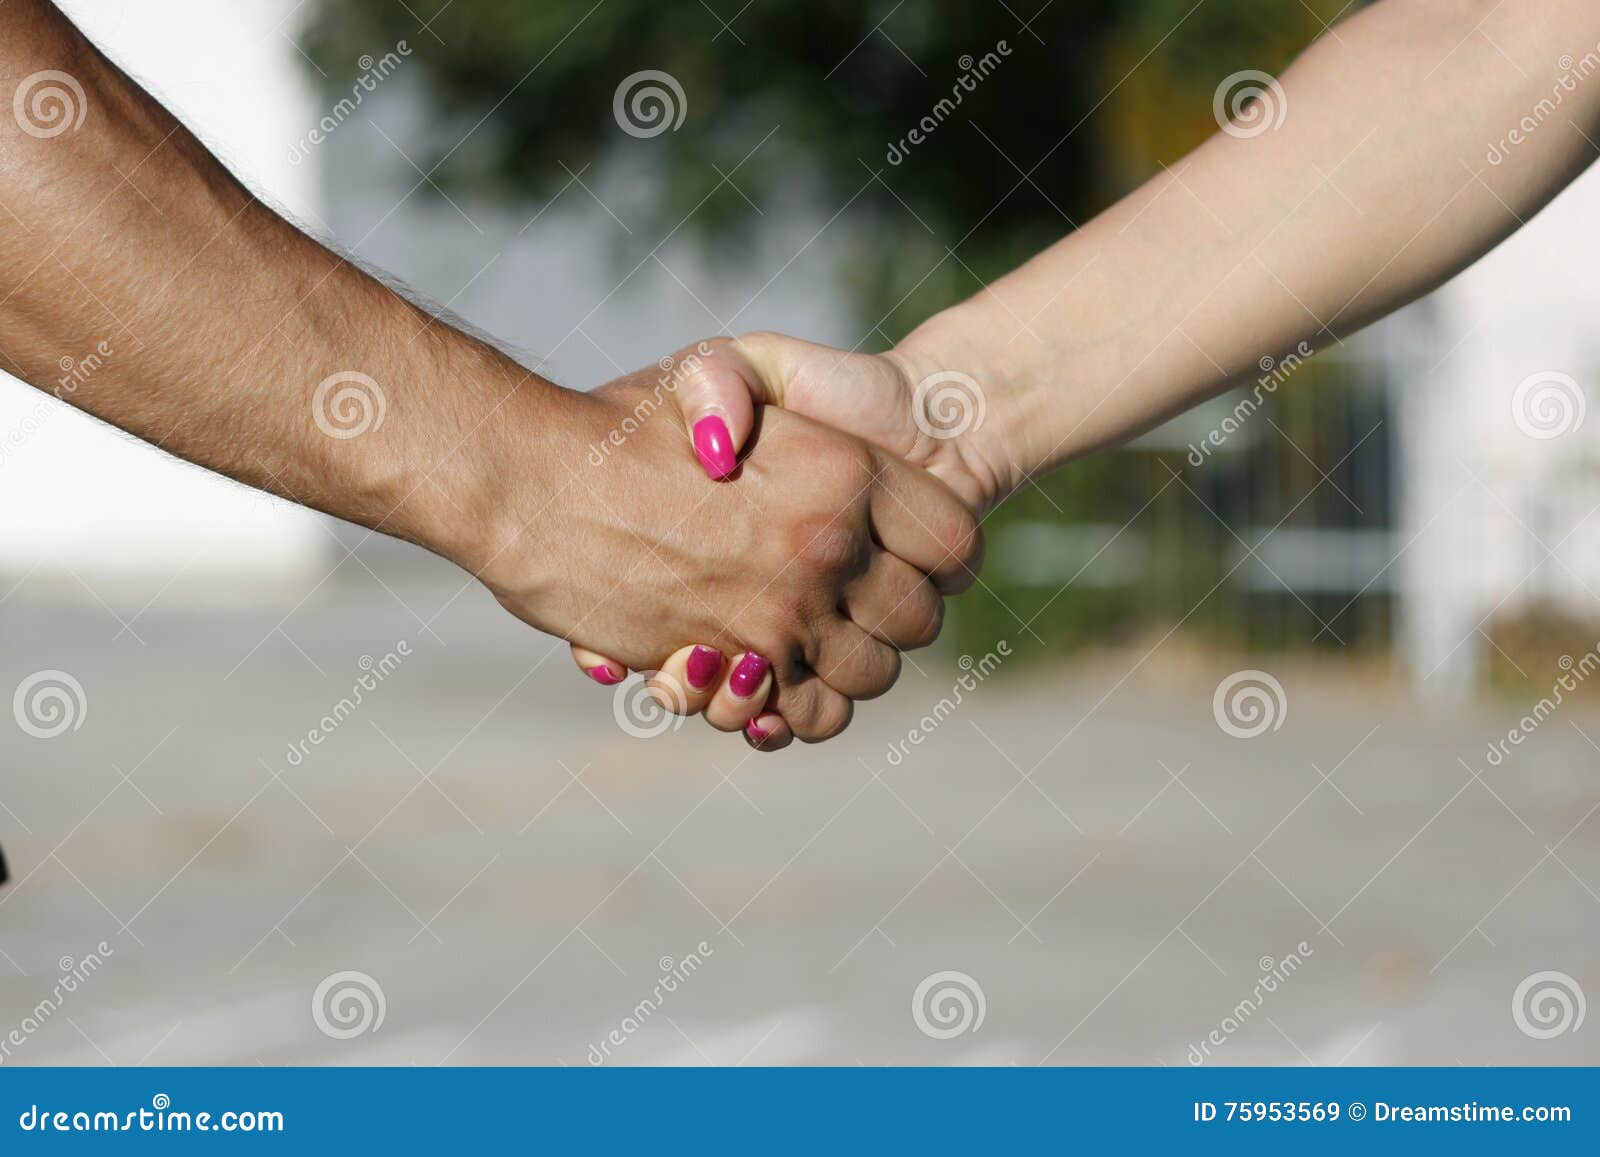 Друзья детства улыбнувшись пожали друг. Пожатие рук мужчины и женщины. Пожатие рук девушки и парня. Девушки пожимают руки. Дружеское рукопожатие мужчины и женщины.